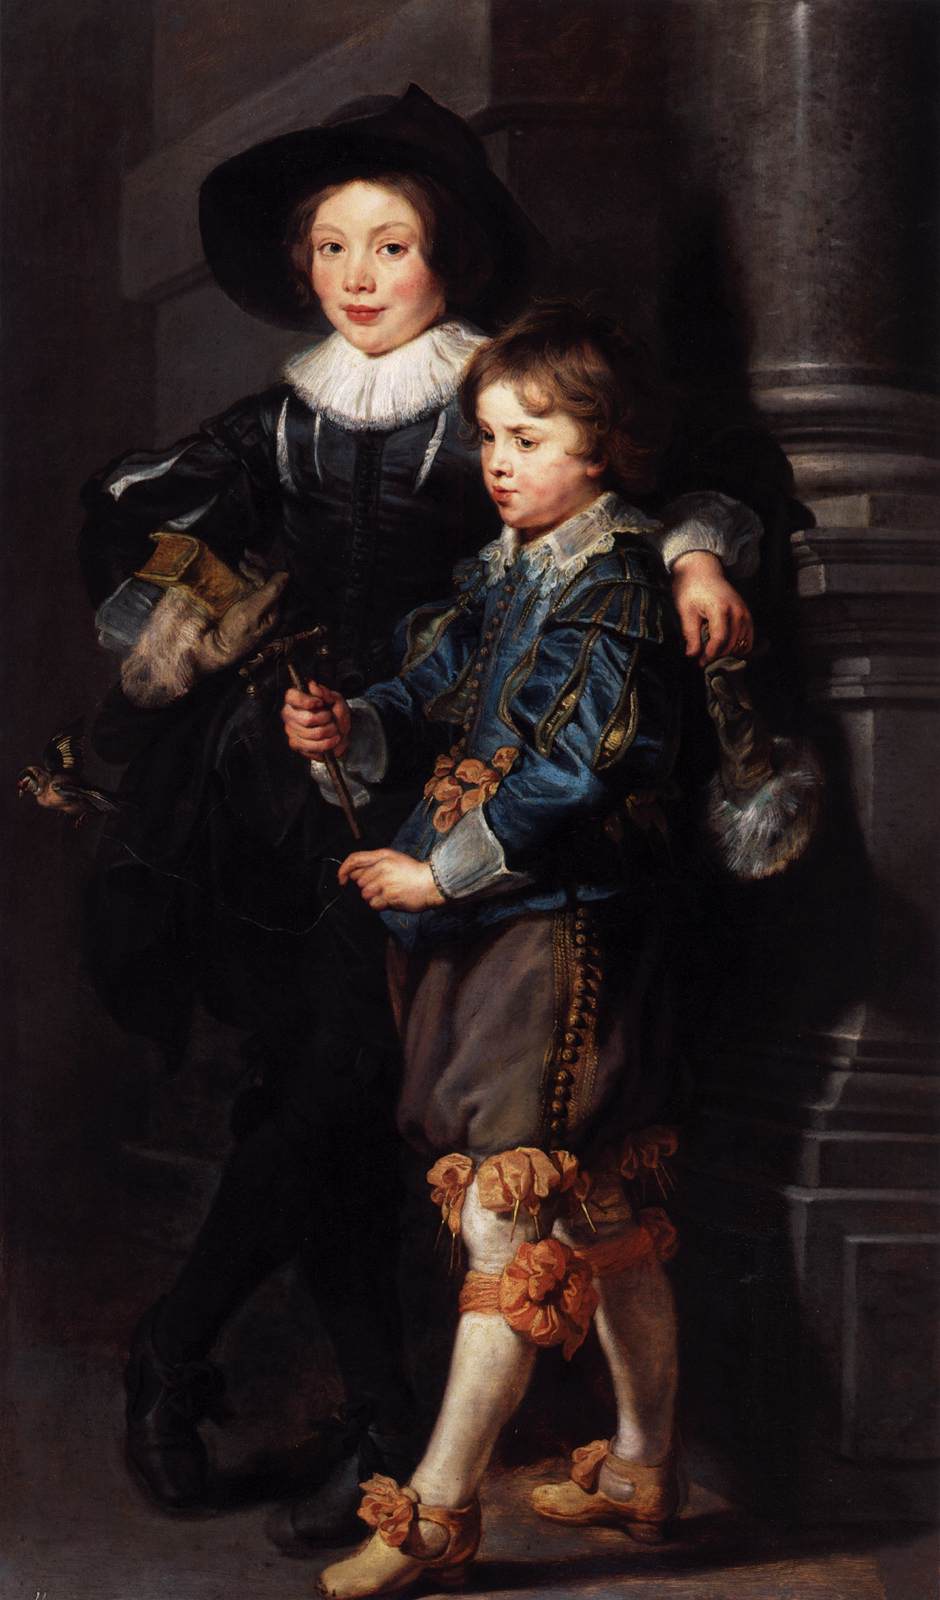 Alberto e Nicholas Rubens